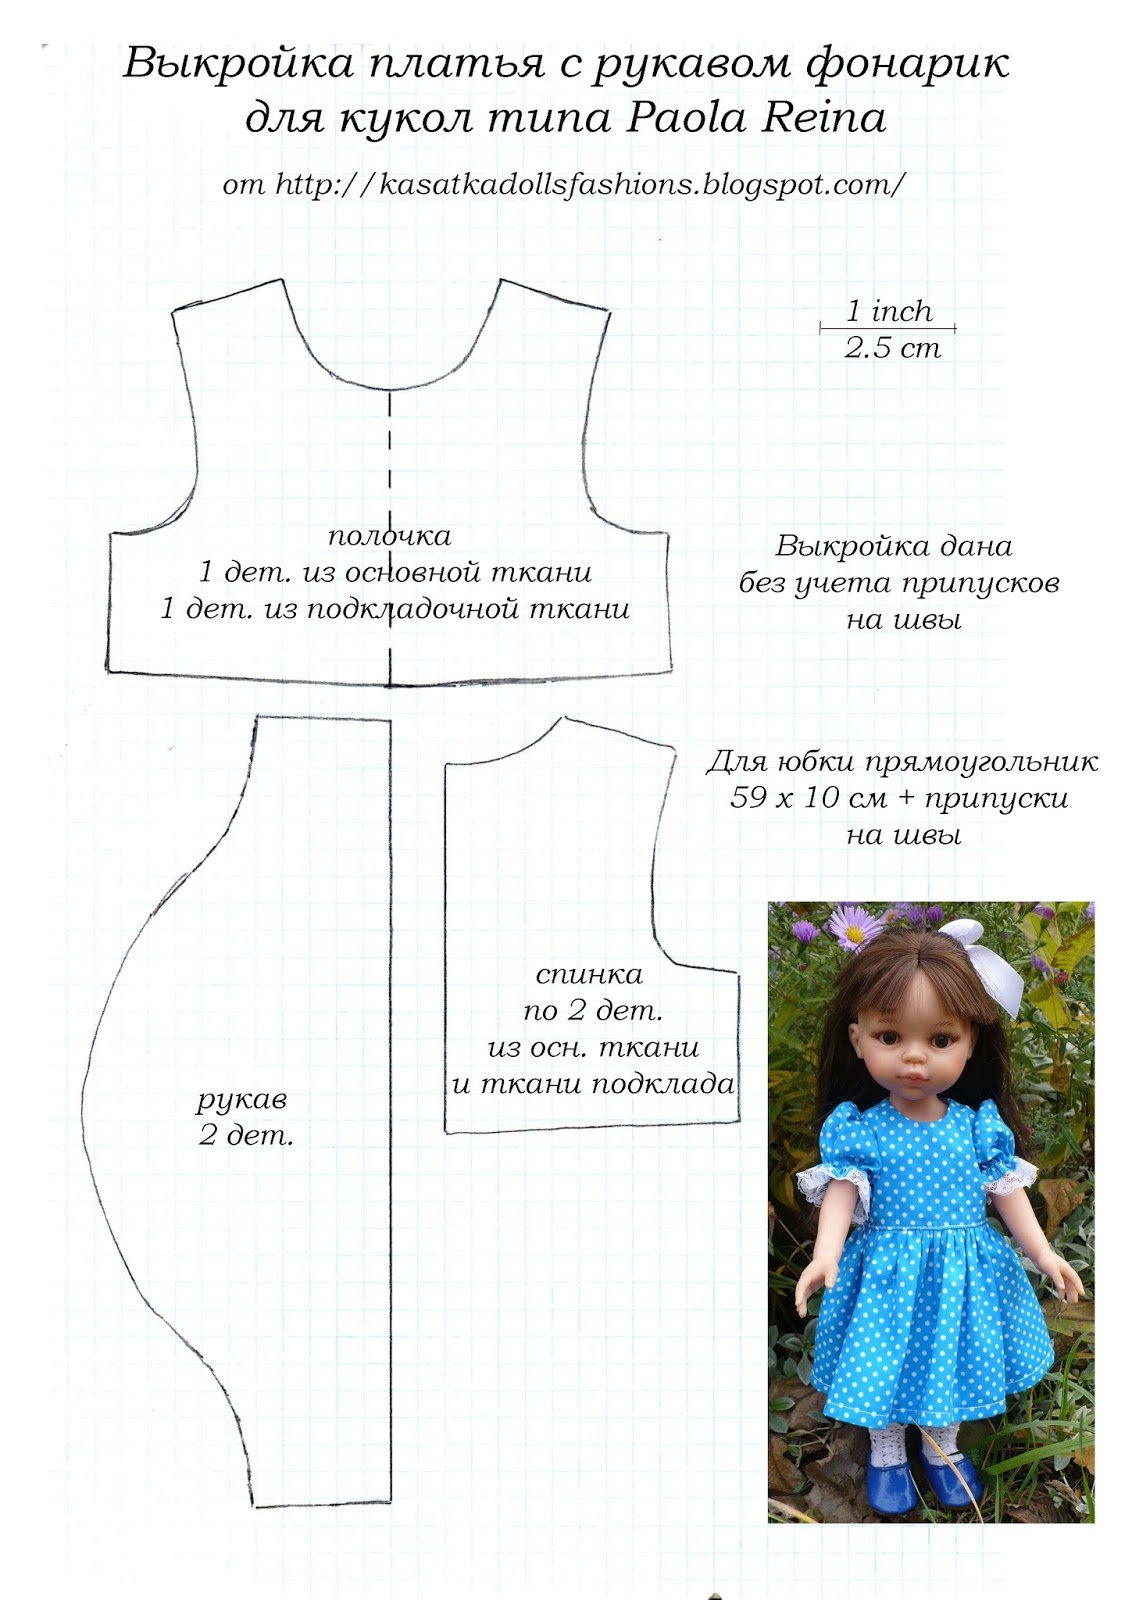 Выкройка платья для куклы Паола Рейна 32 см